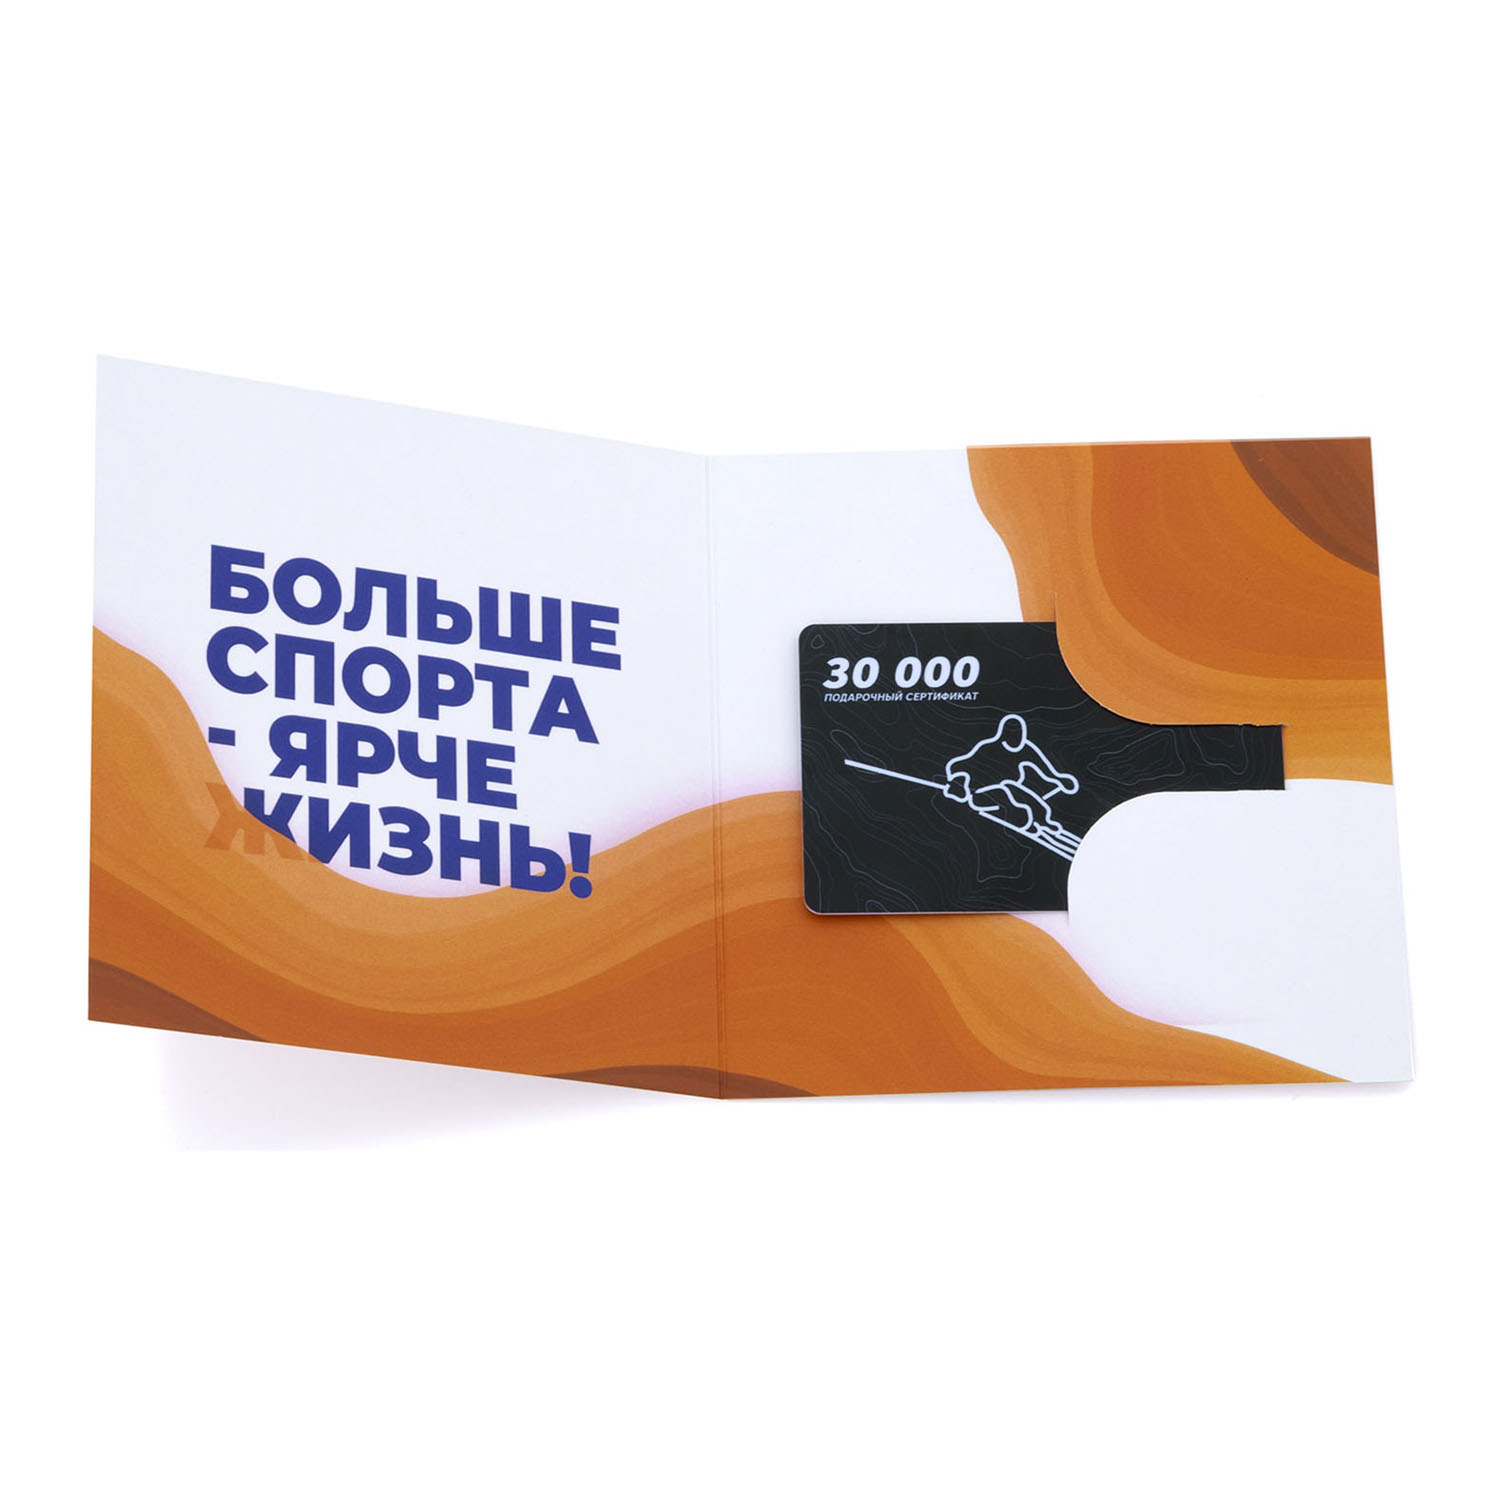 Кант Подарочный сертификат 30 000 руб